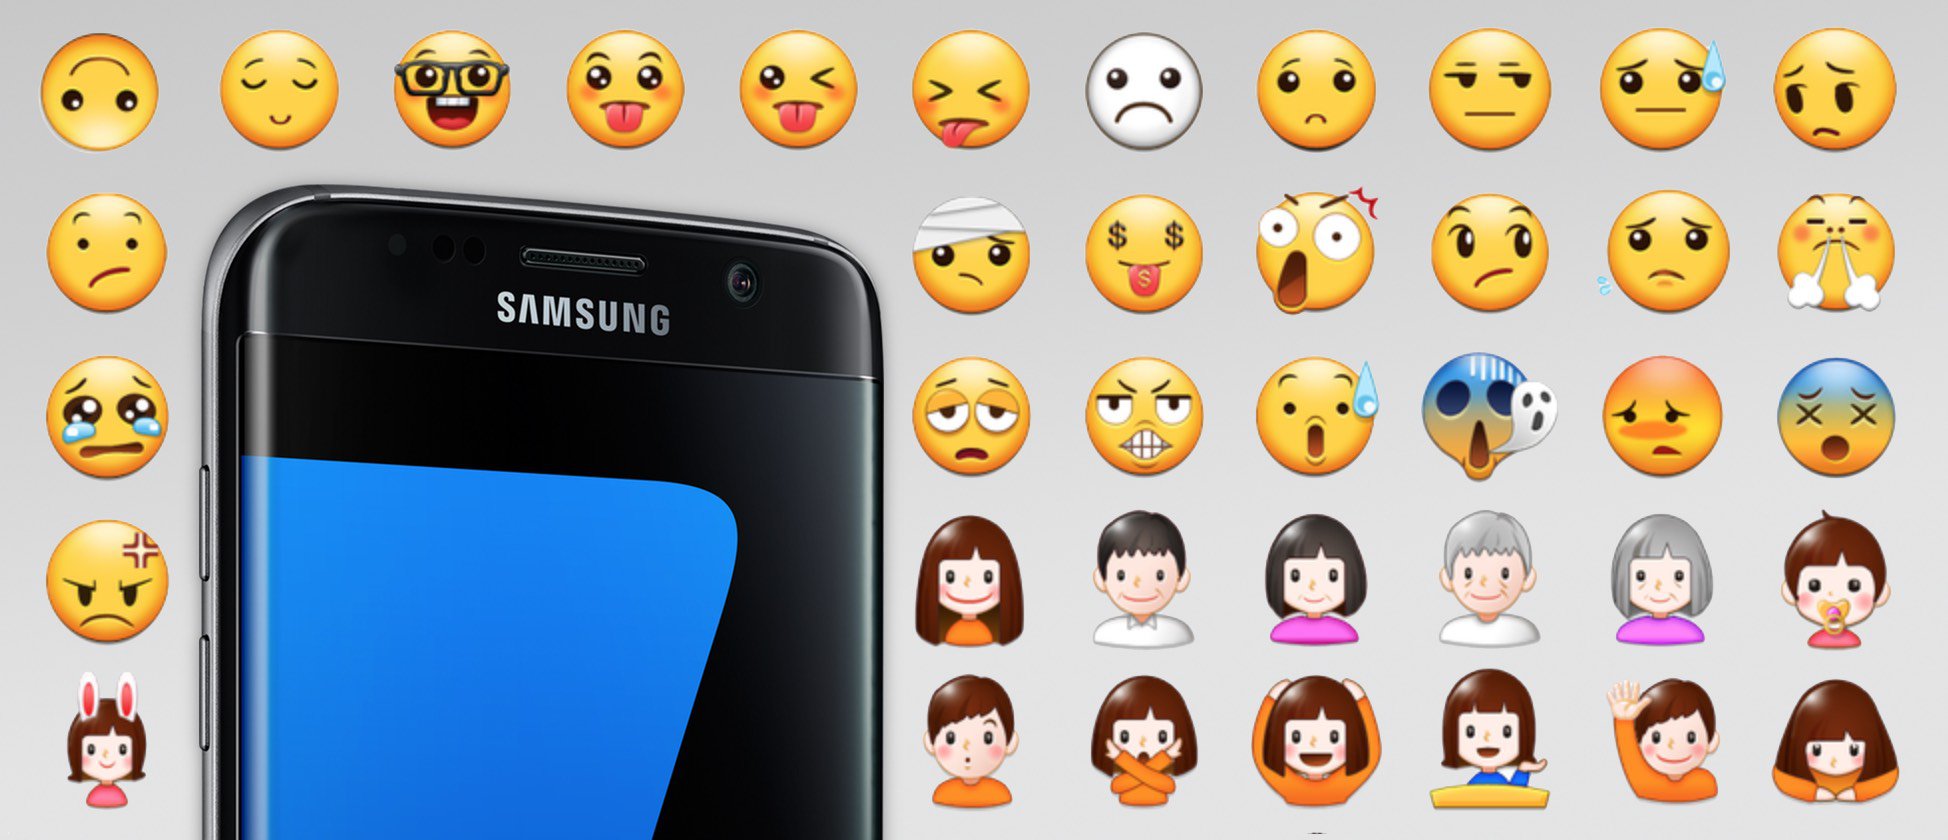 Samsung Emoji 2020